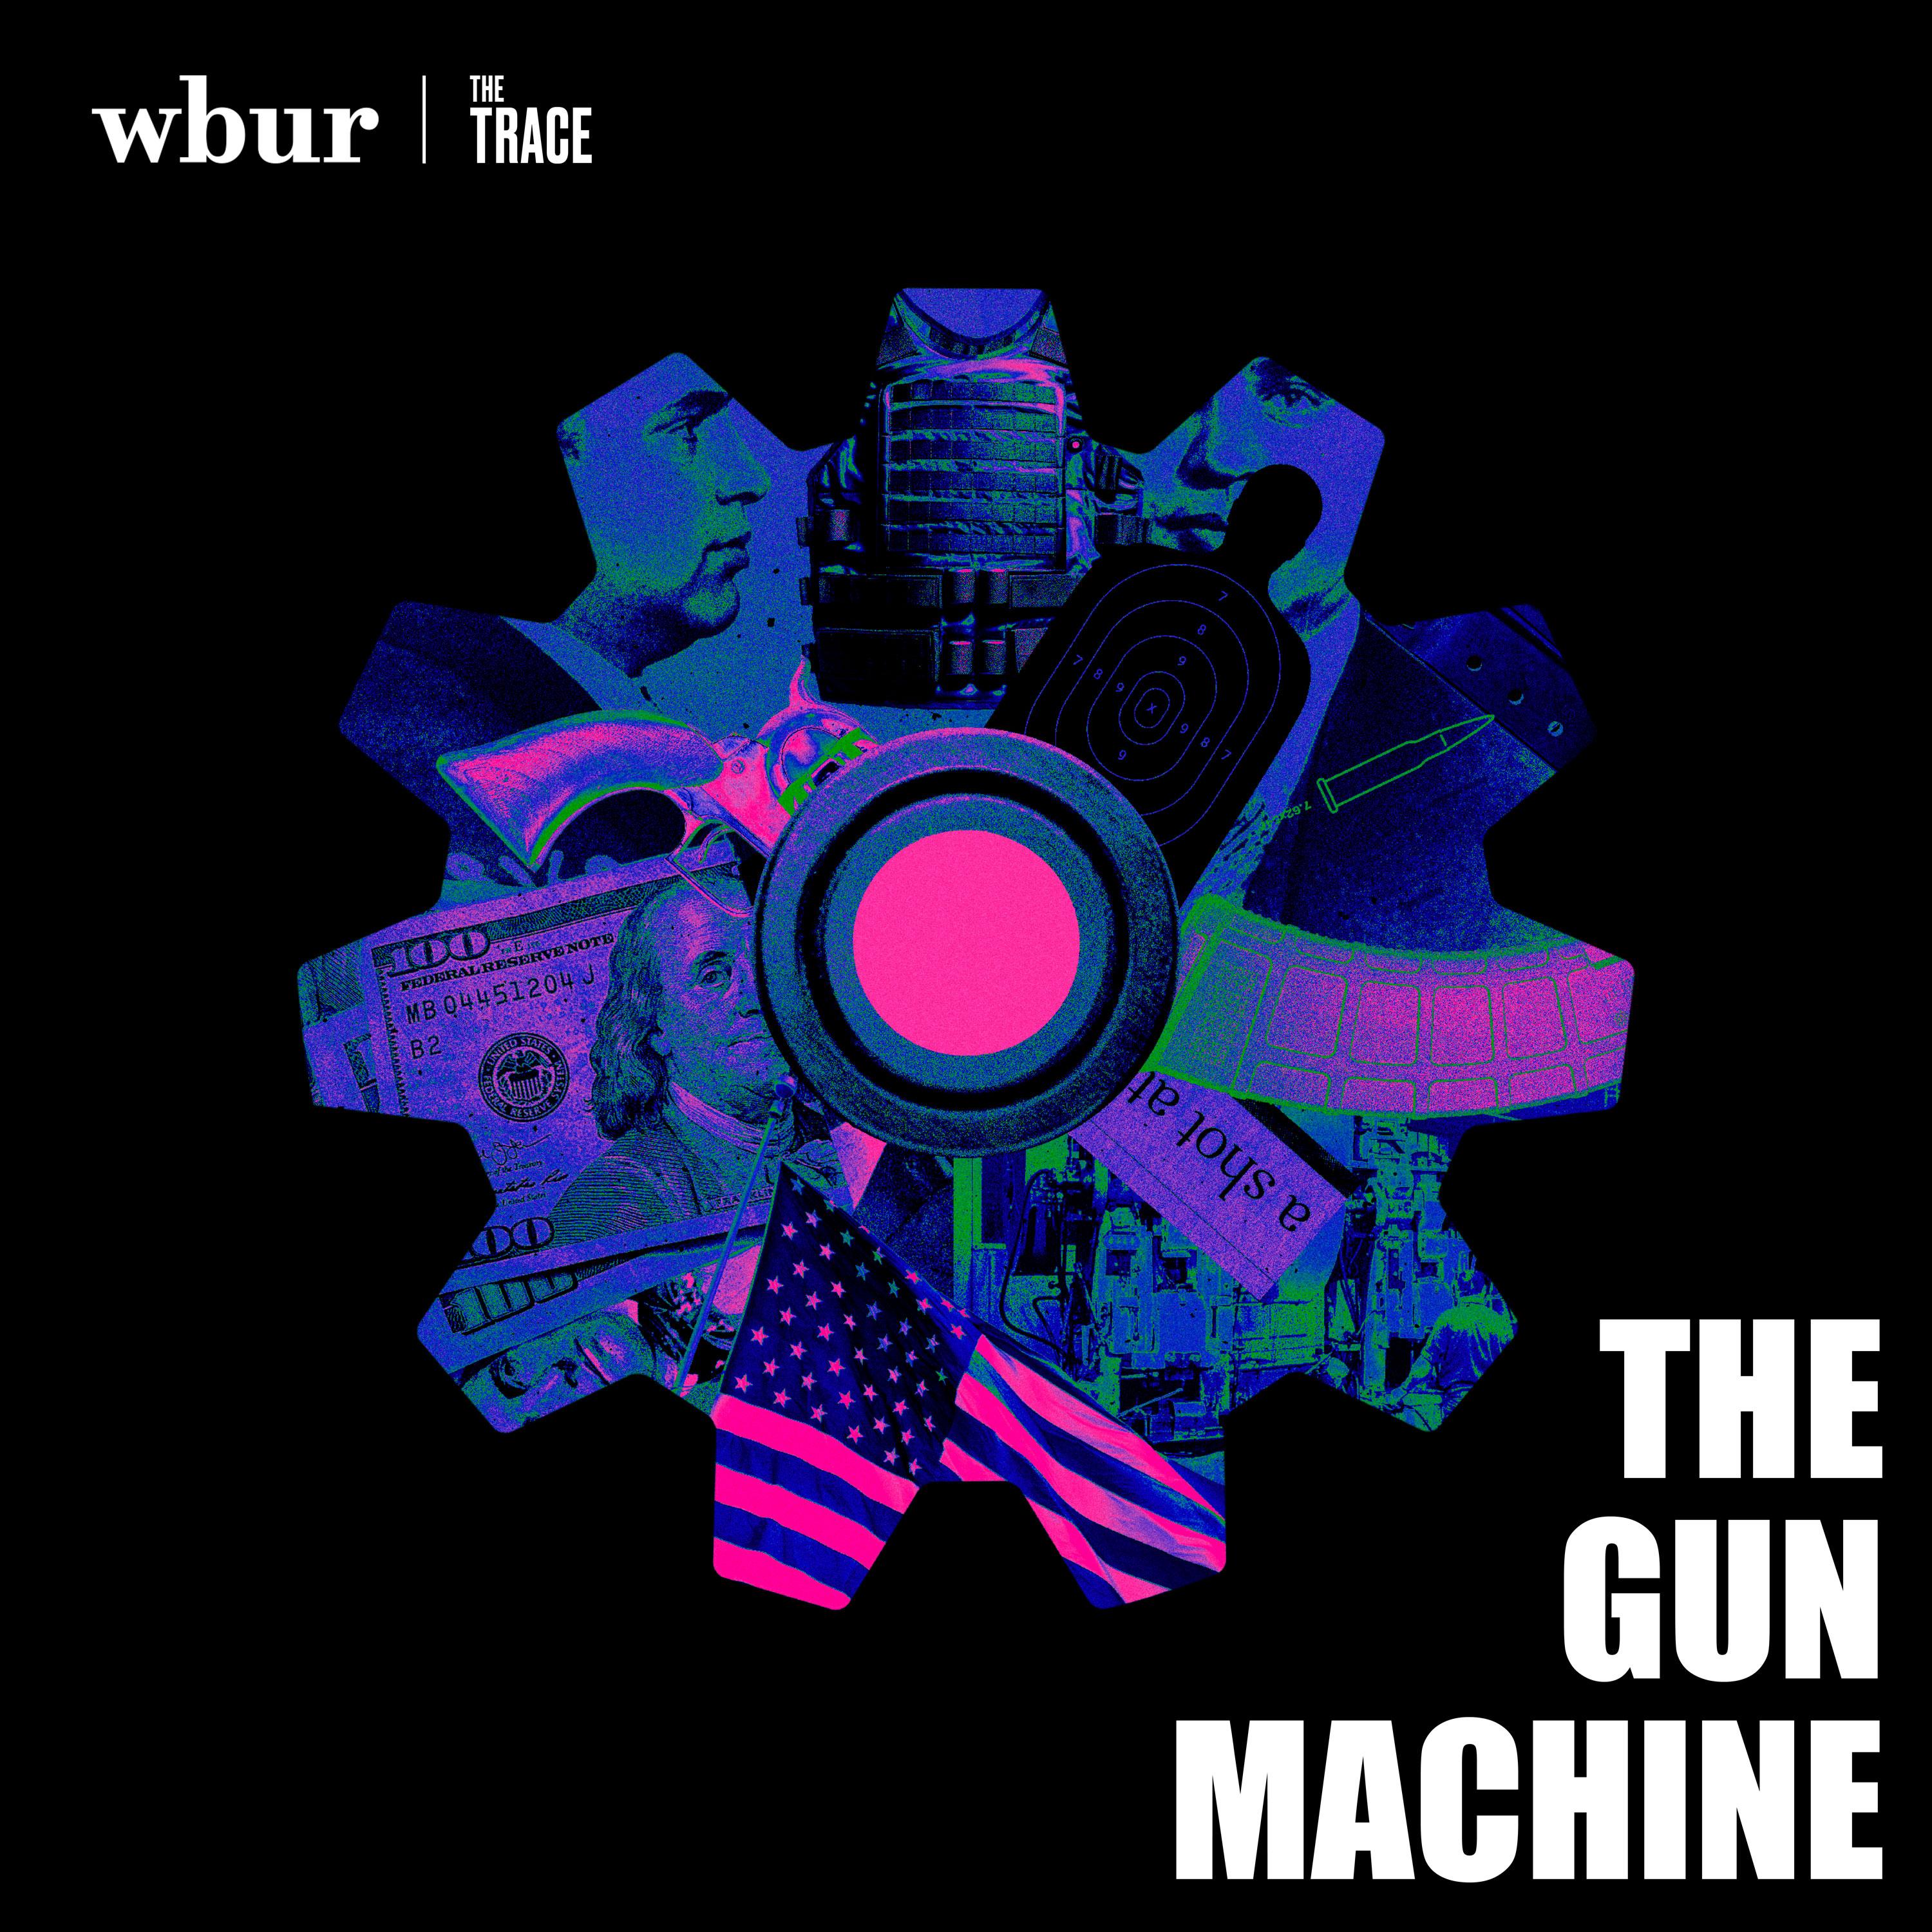 Thumbnail for "The Gun Machine".